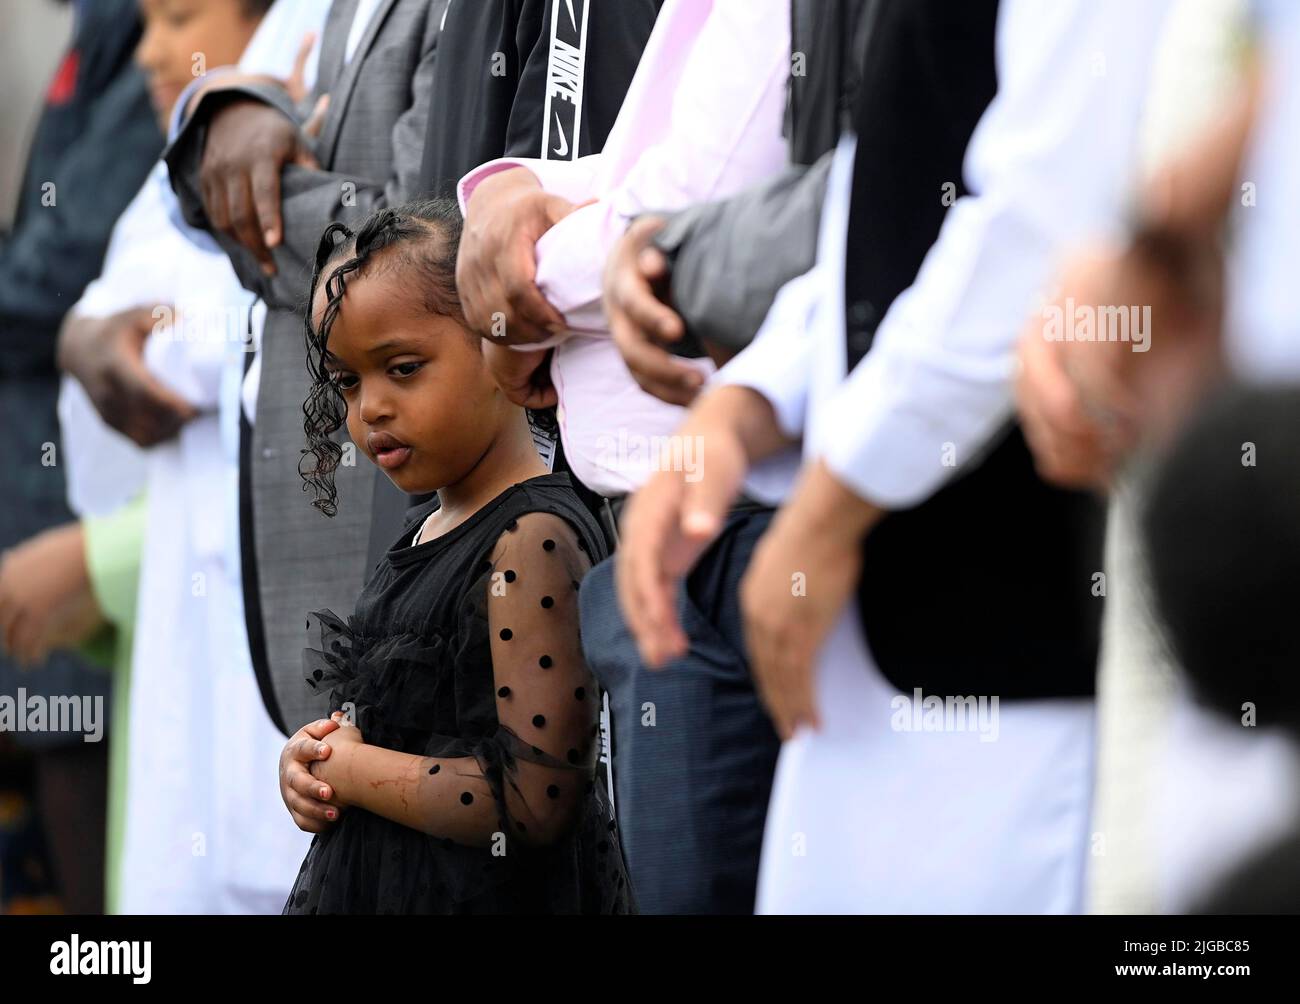 Un niño mira mientras se rezan durante el festival Eid en los terrenos de Davitt Park GAA en Belfast. El festival Eid es un día importante en el calendario musulmán cuando la comida se comparte con parientes, amigos y pobres. Fecha de la foto: Sábado 9 de julio de 2022. Foto de stock